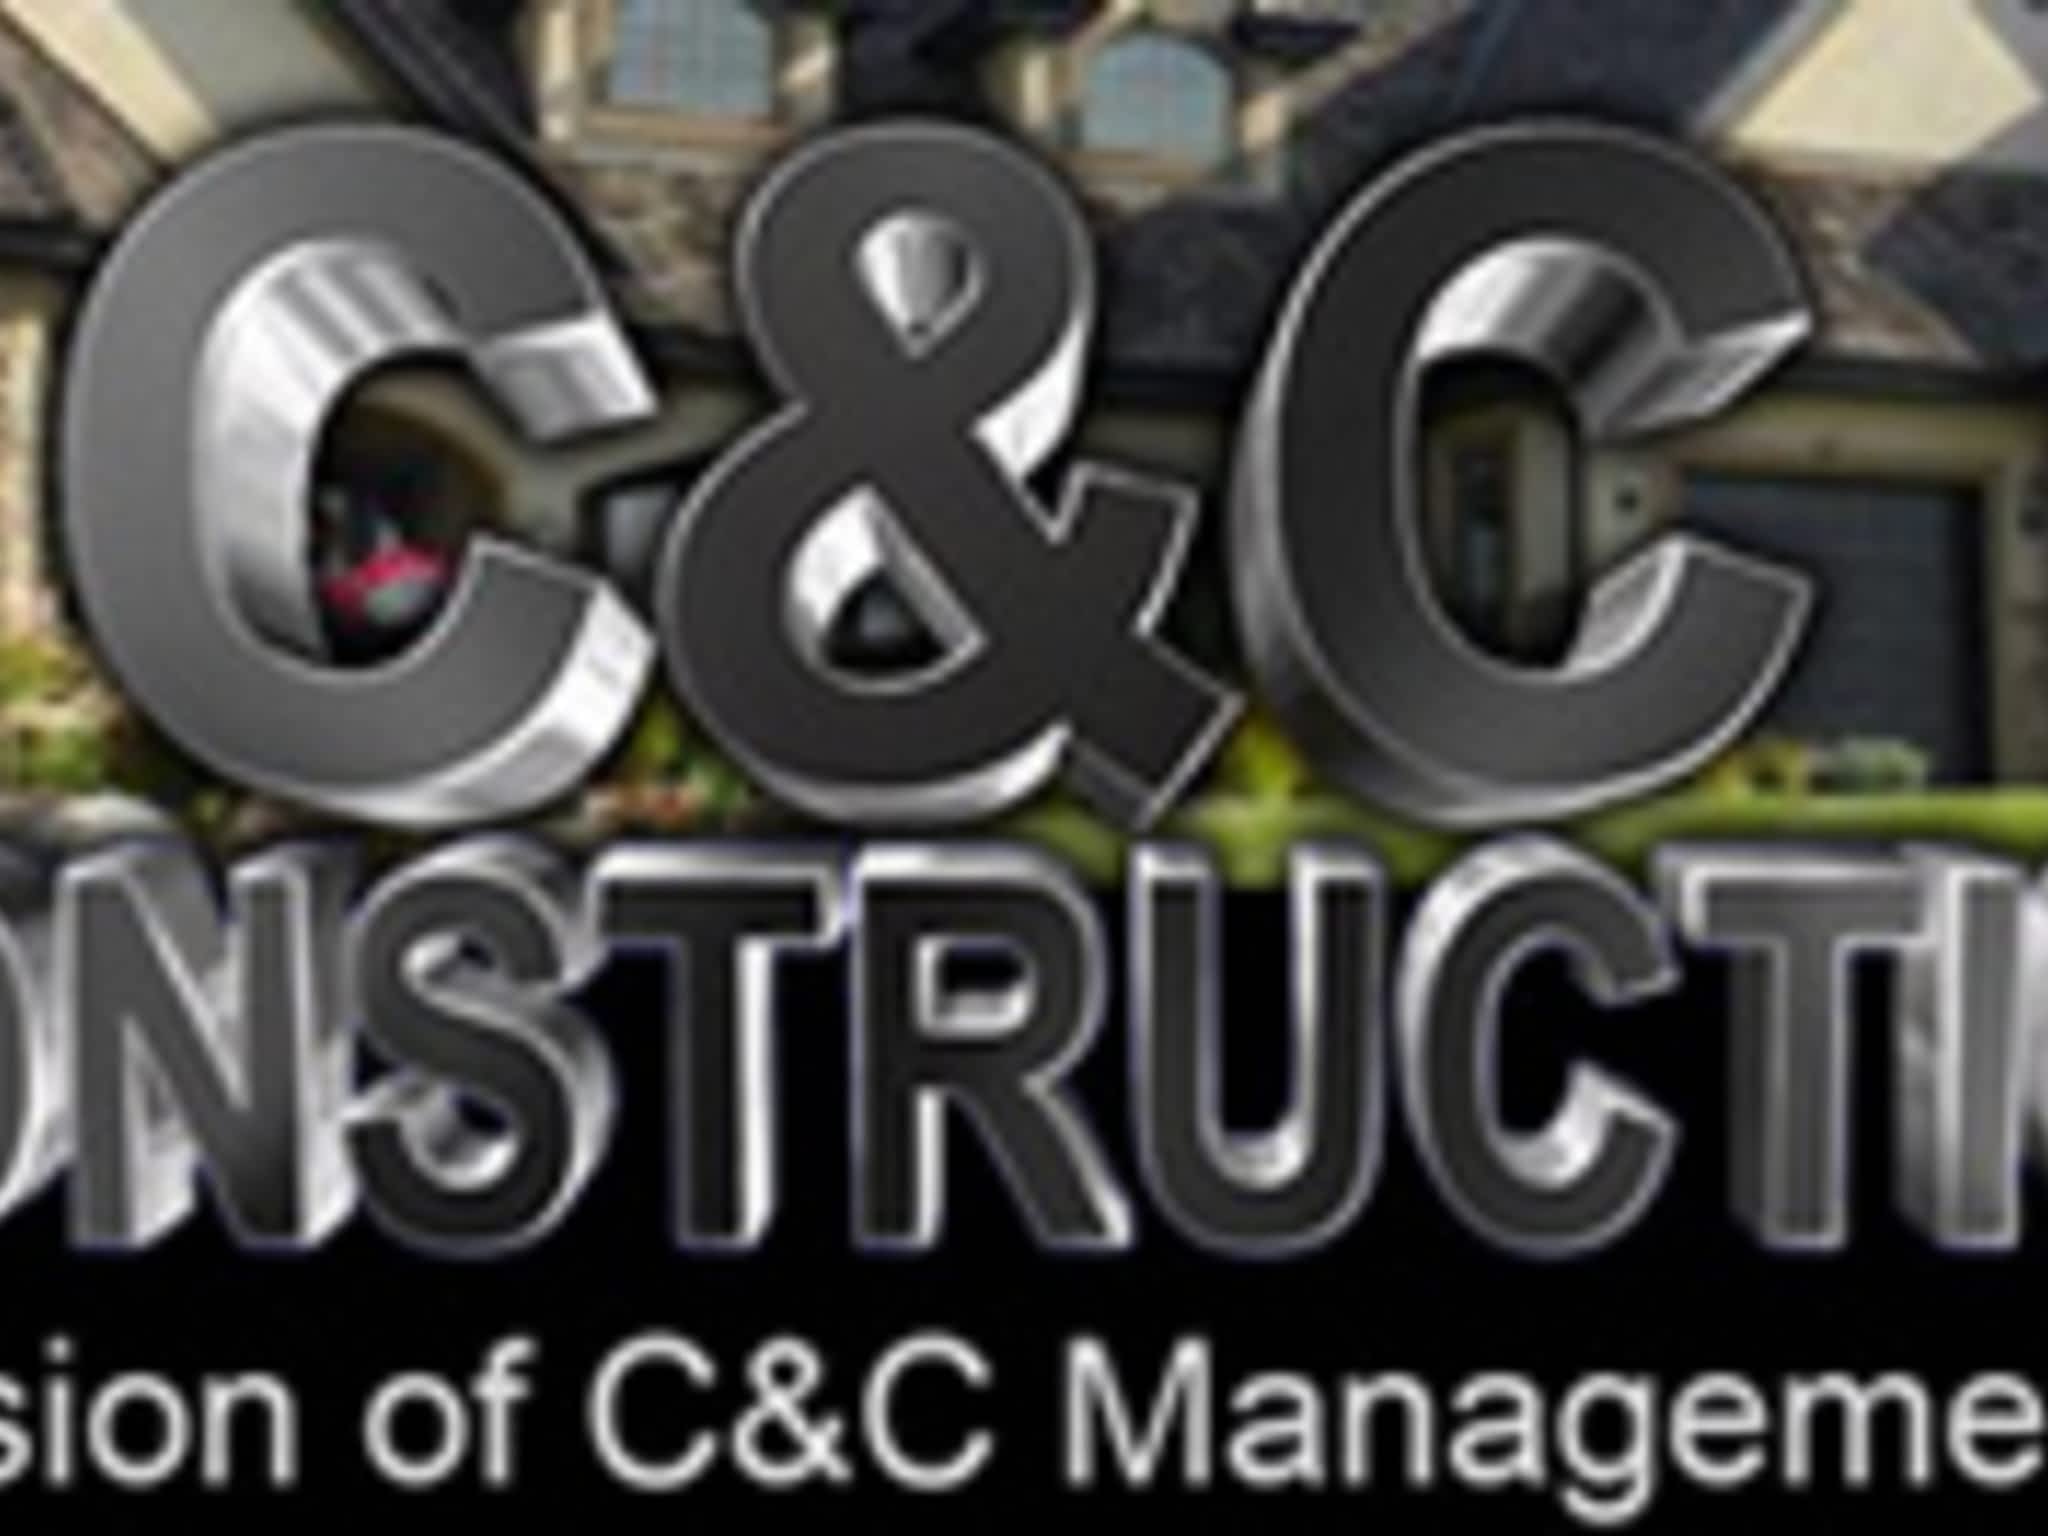 photo C & C Construction A Division of C & C Management Ltd